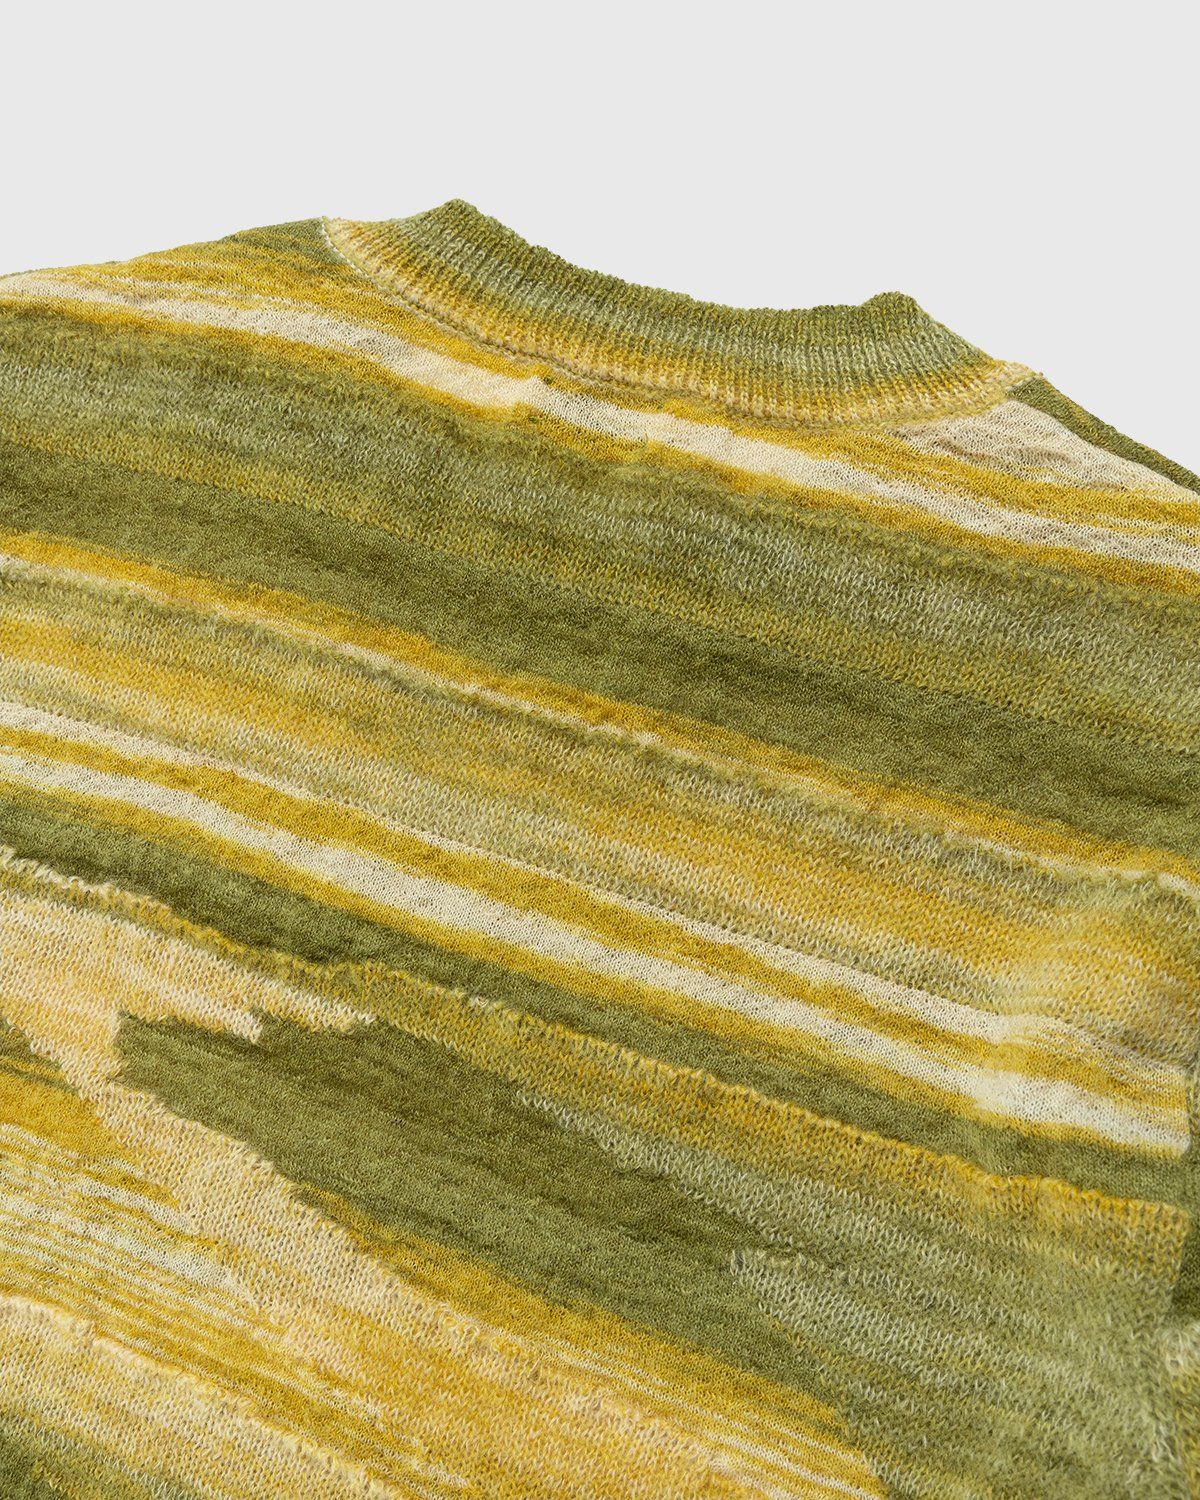 Dries van Noten – Jamino Sweater Yellow - Knitwear - Yellow - Image 4